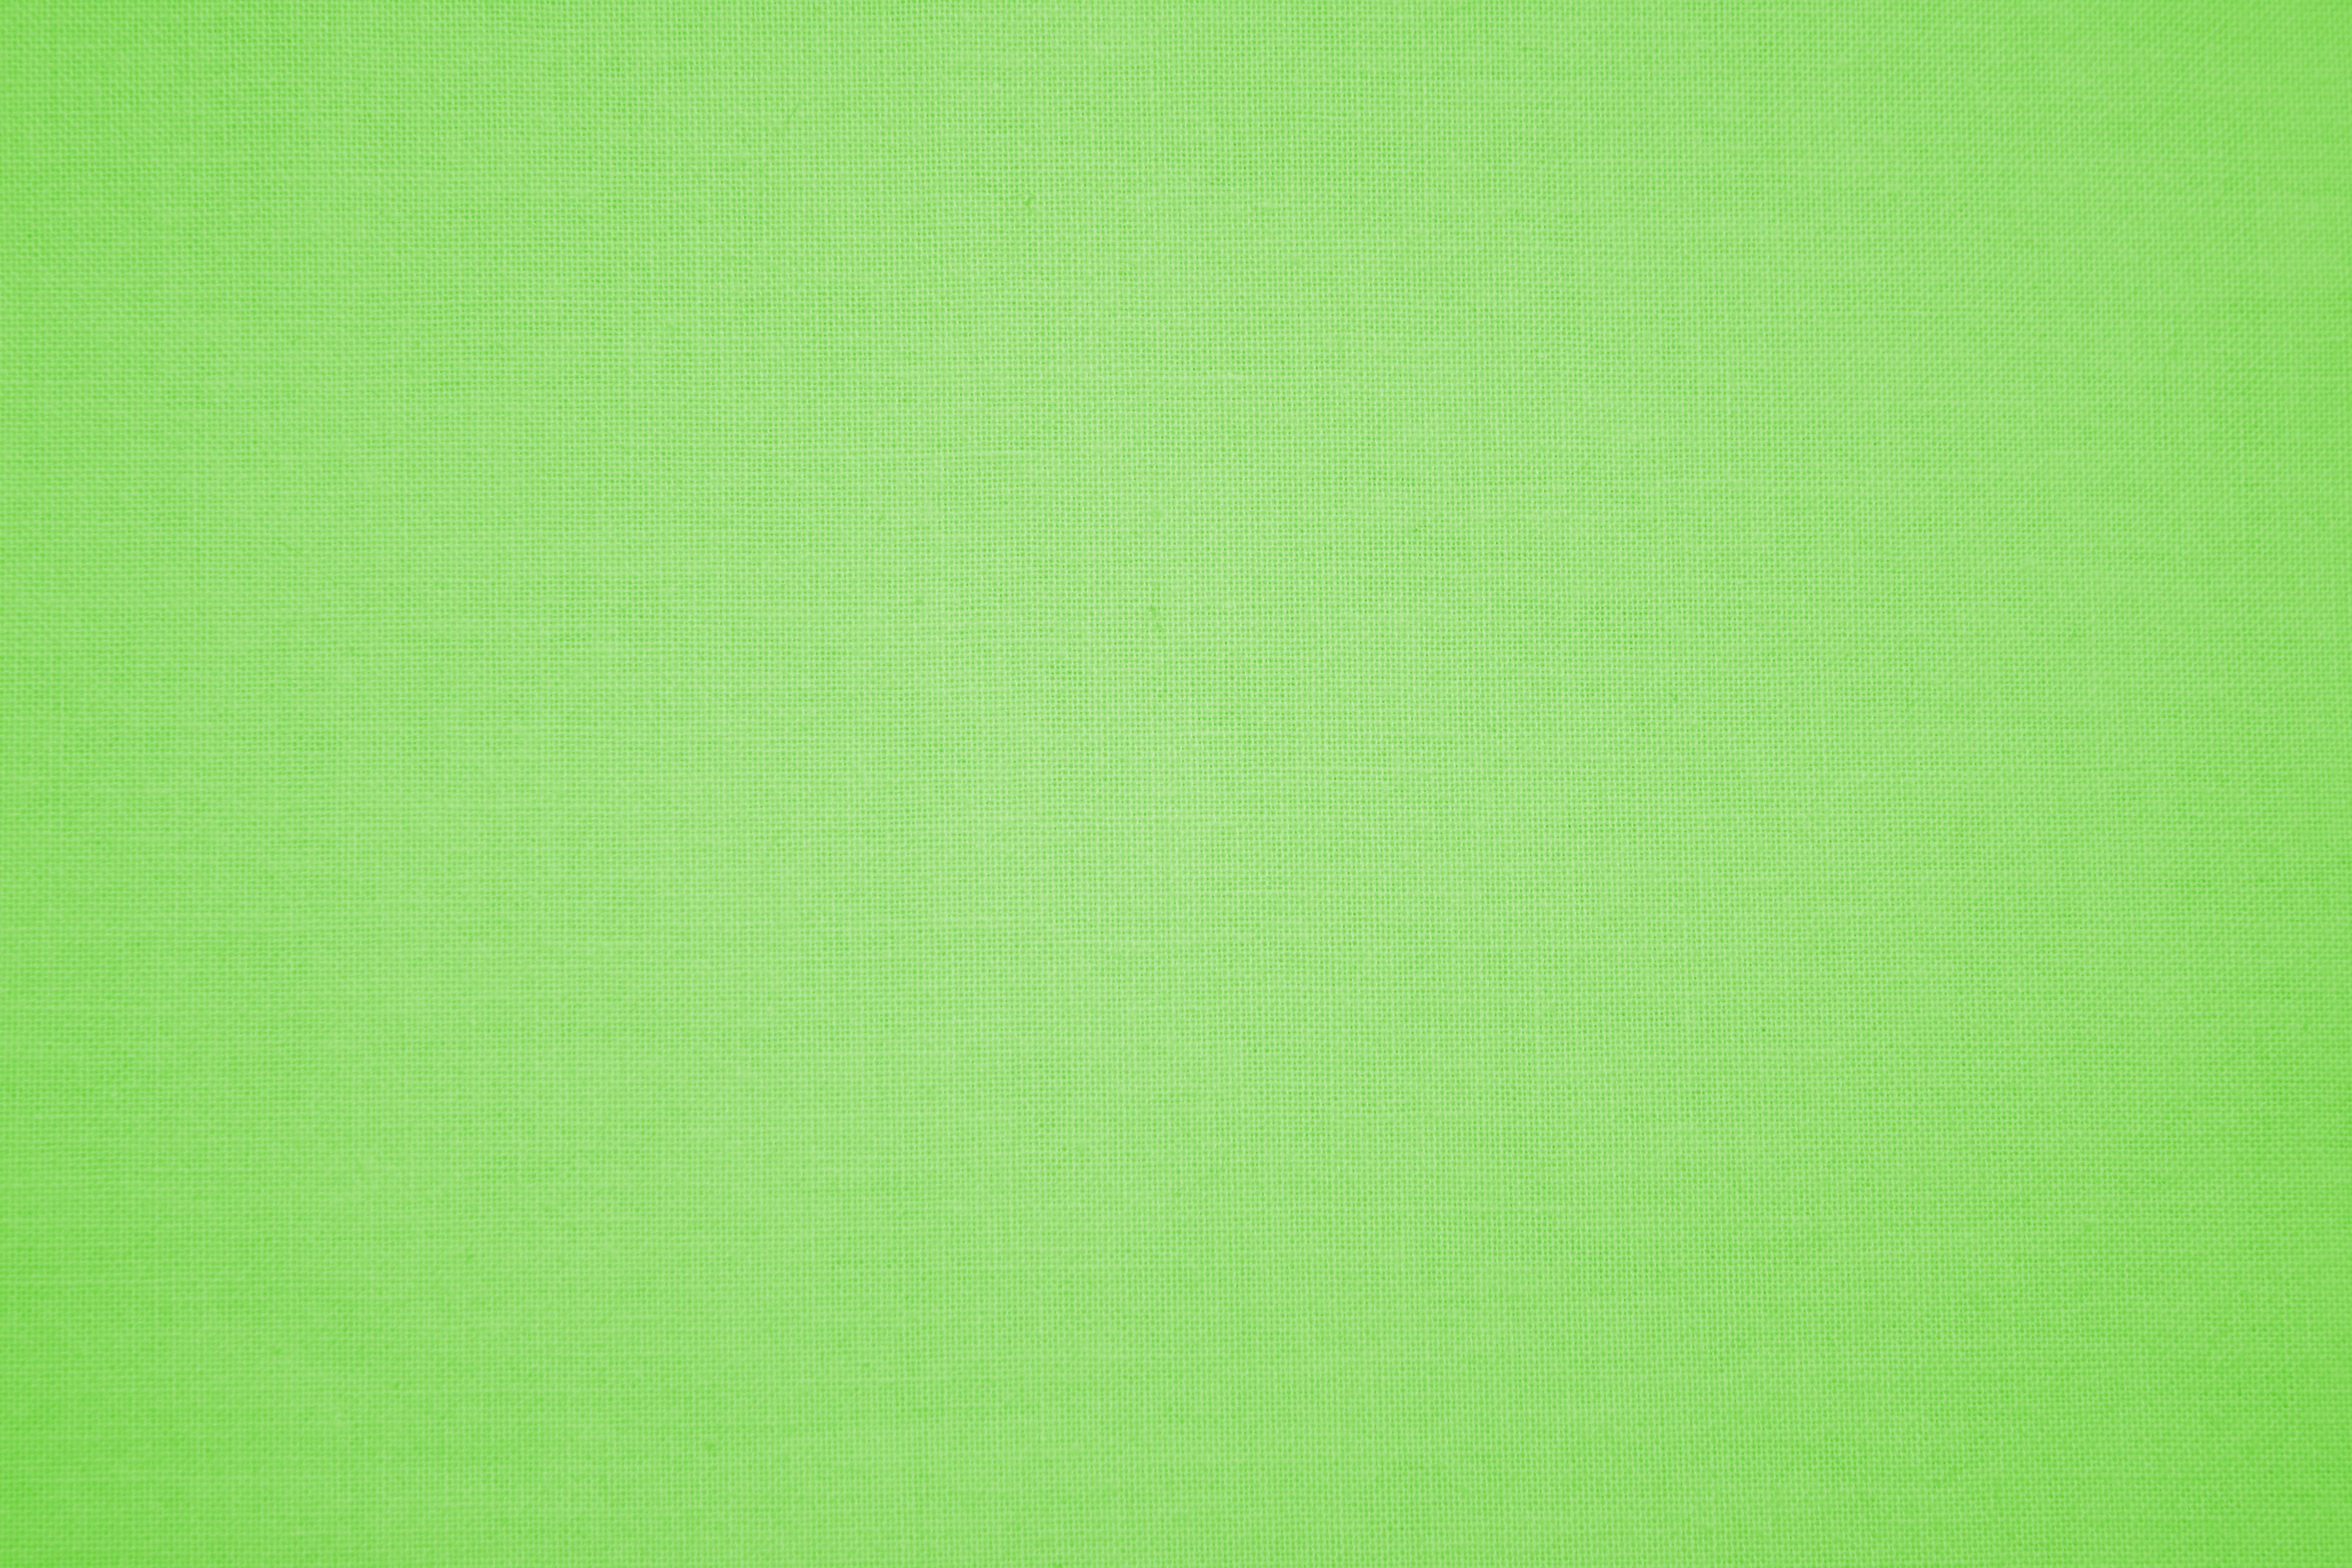 دانلود پس زمینه بافت سبز روشن و کم رنگ محو برای فتوشاپ